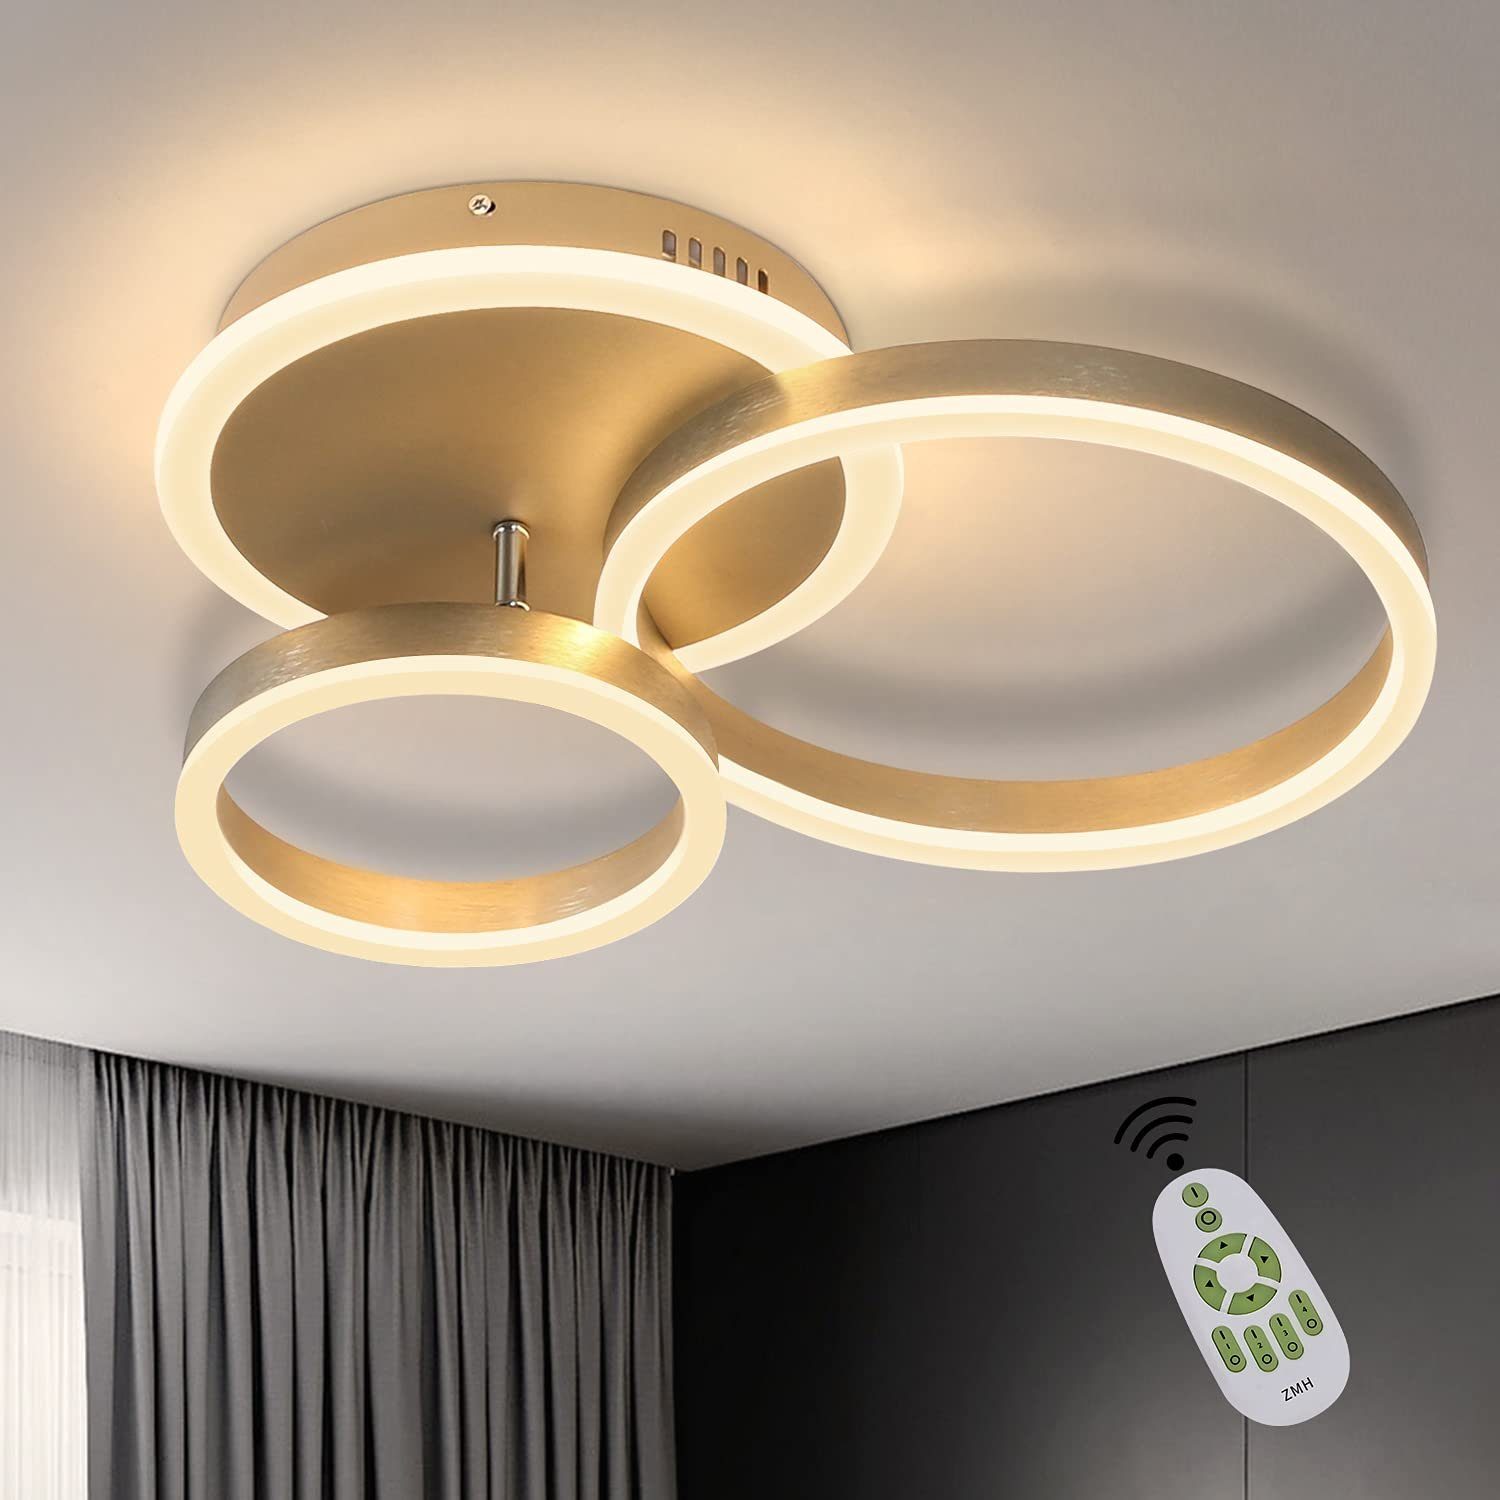 LED Decken braun Glas Design Beleuchtung Lampe Leuchte Küche Wohn Zimmer Philips 